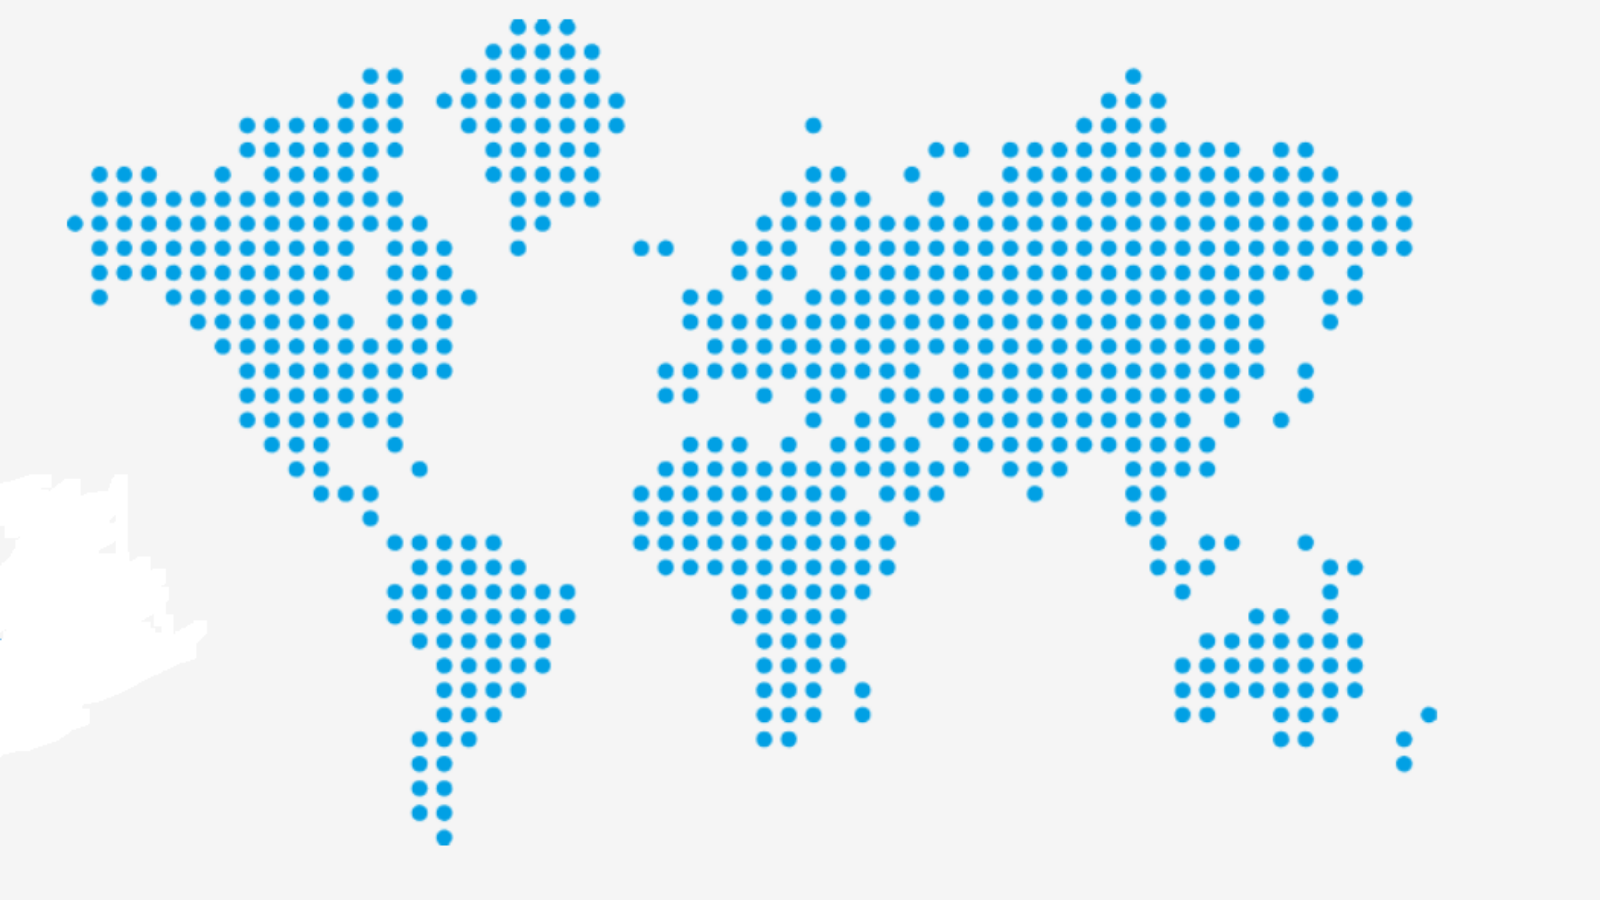 Mapa del mundo dibujado con círculos azules, sin distinción de color entre regiones ni países